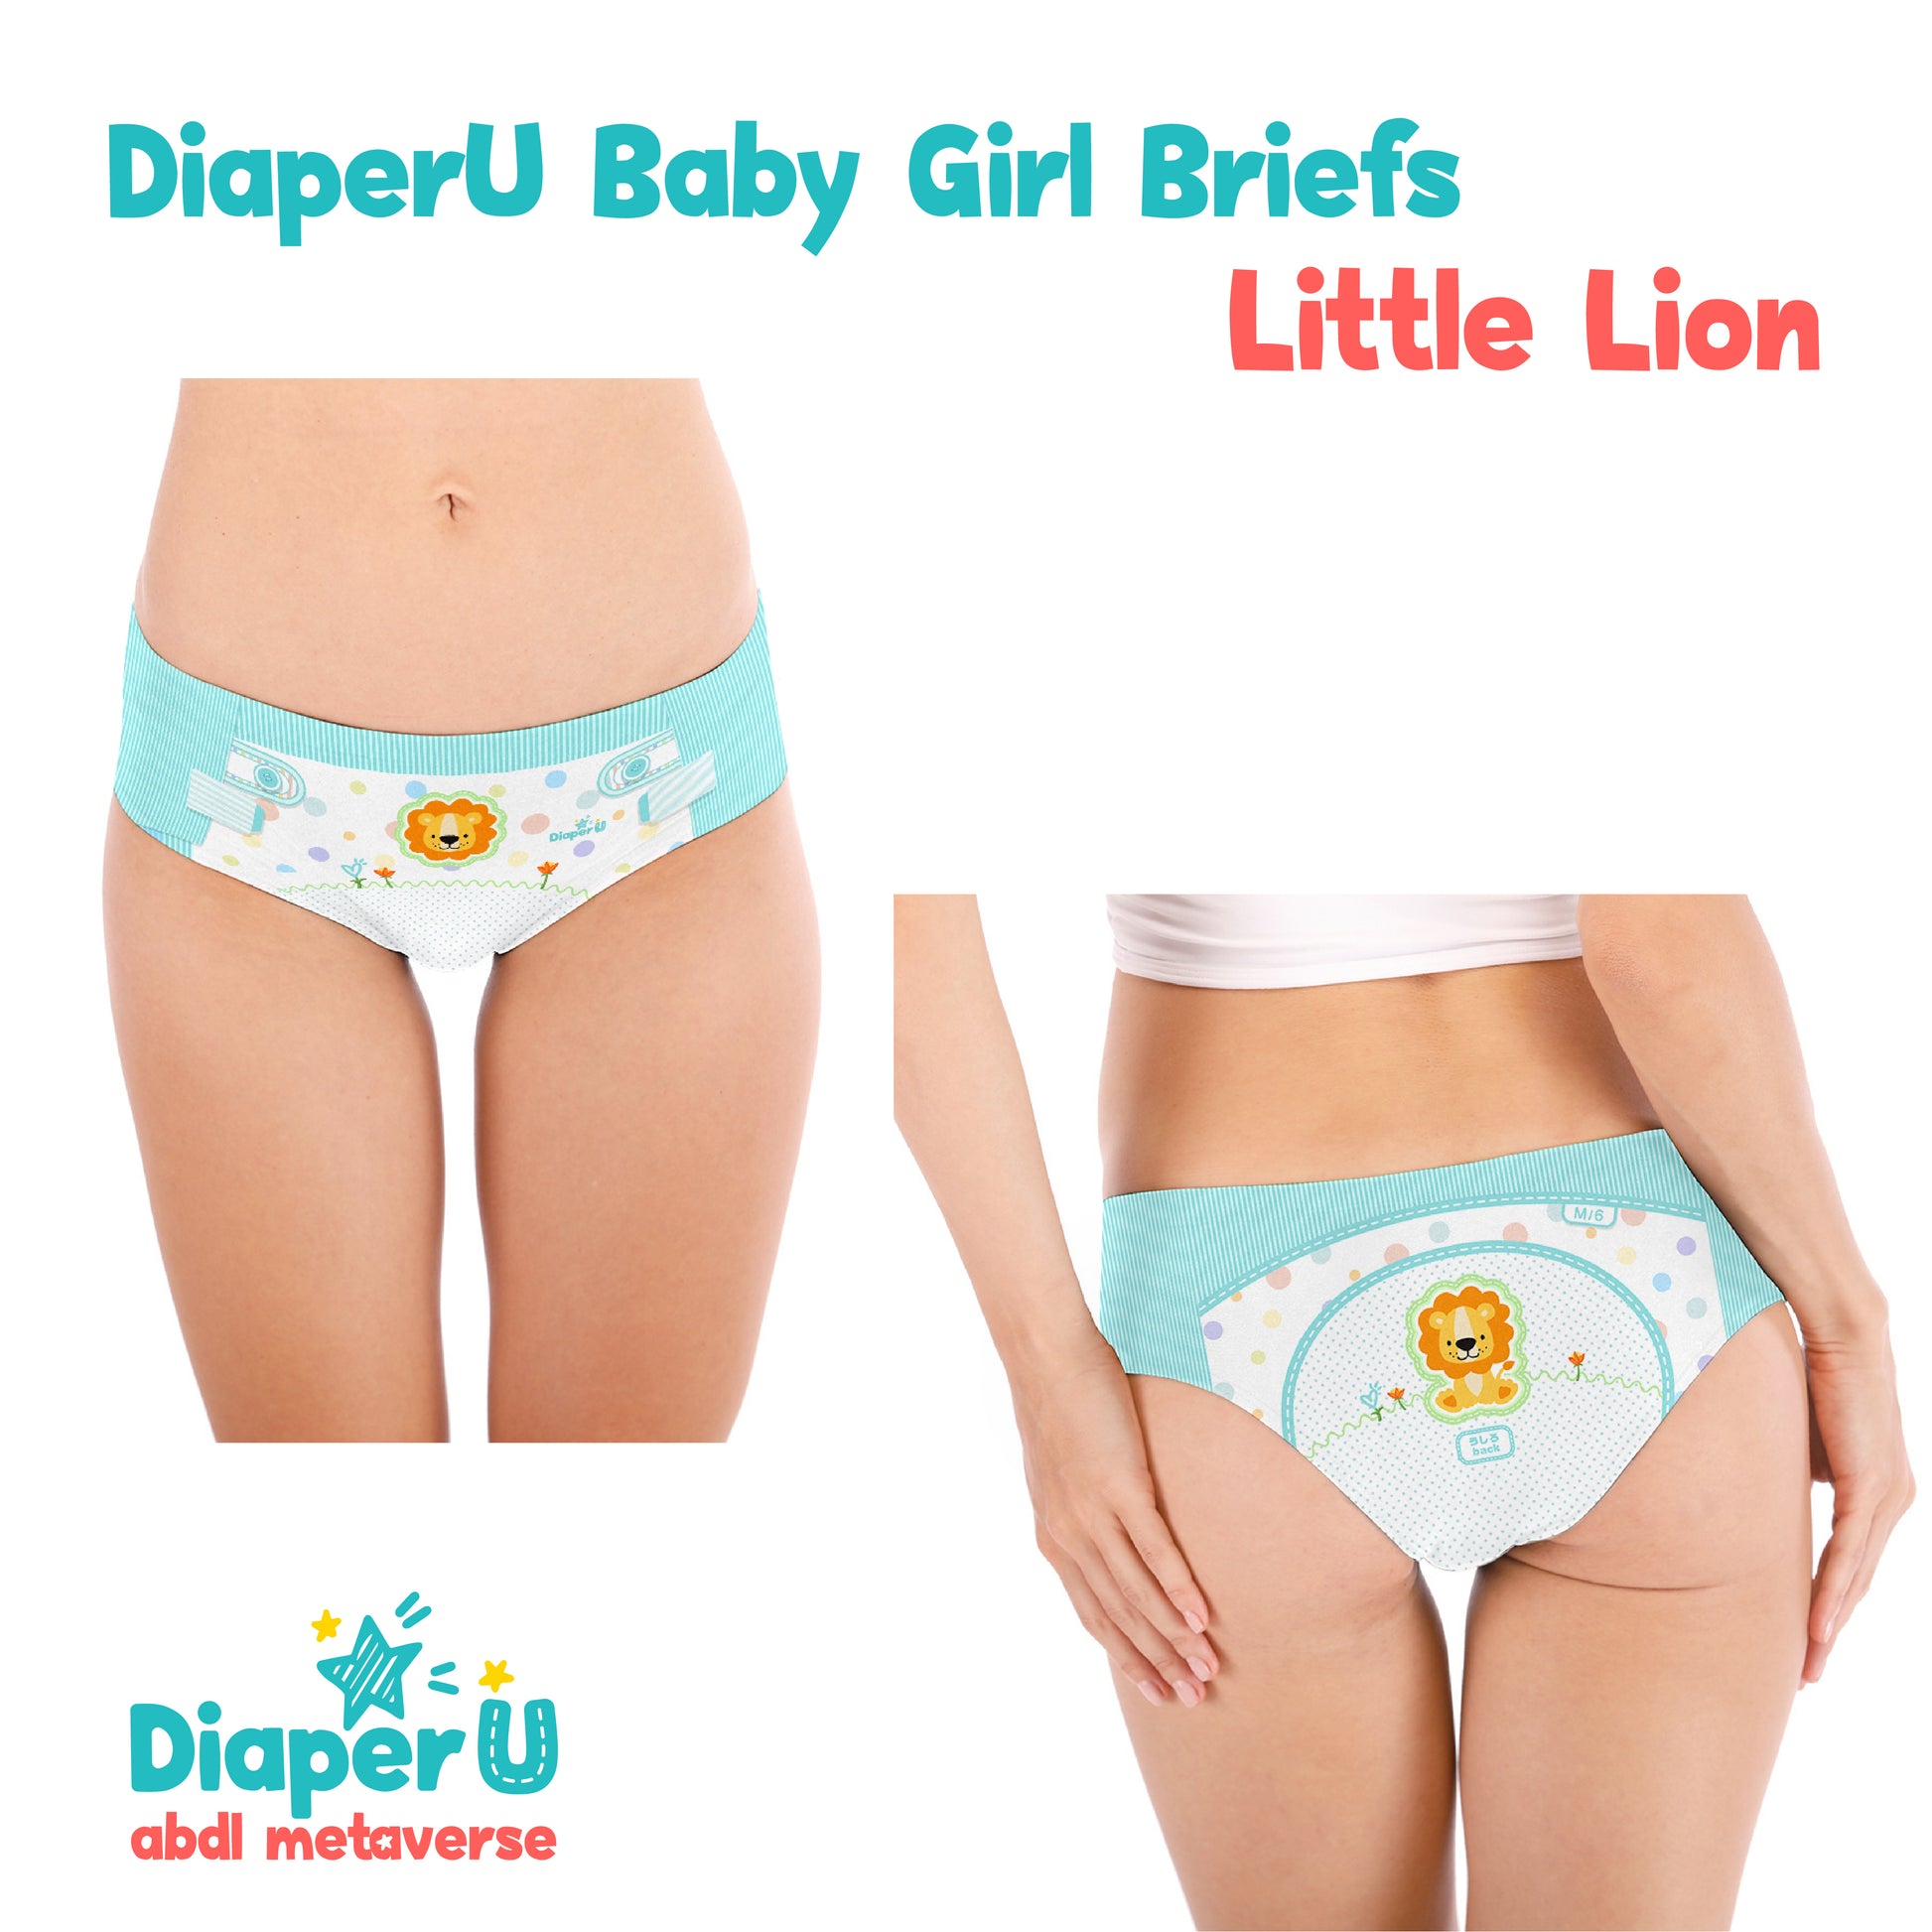 ABDL Baby Girl Briefs - Little Lion – DiaperU